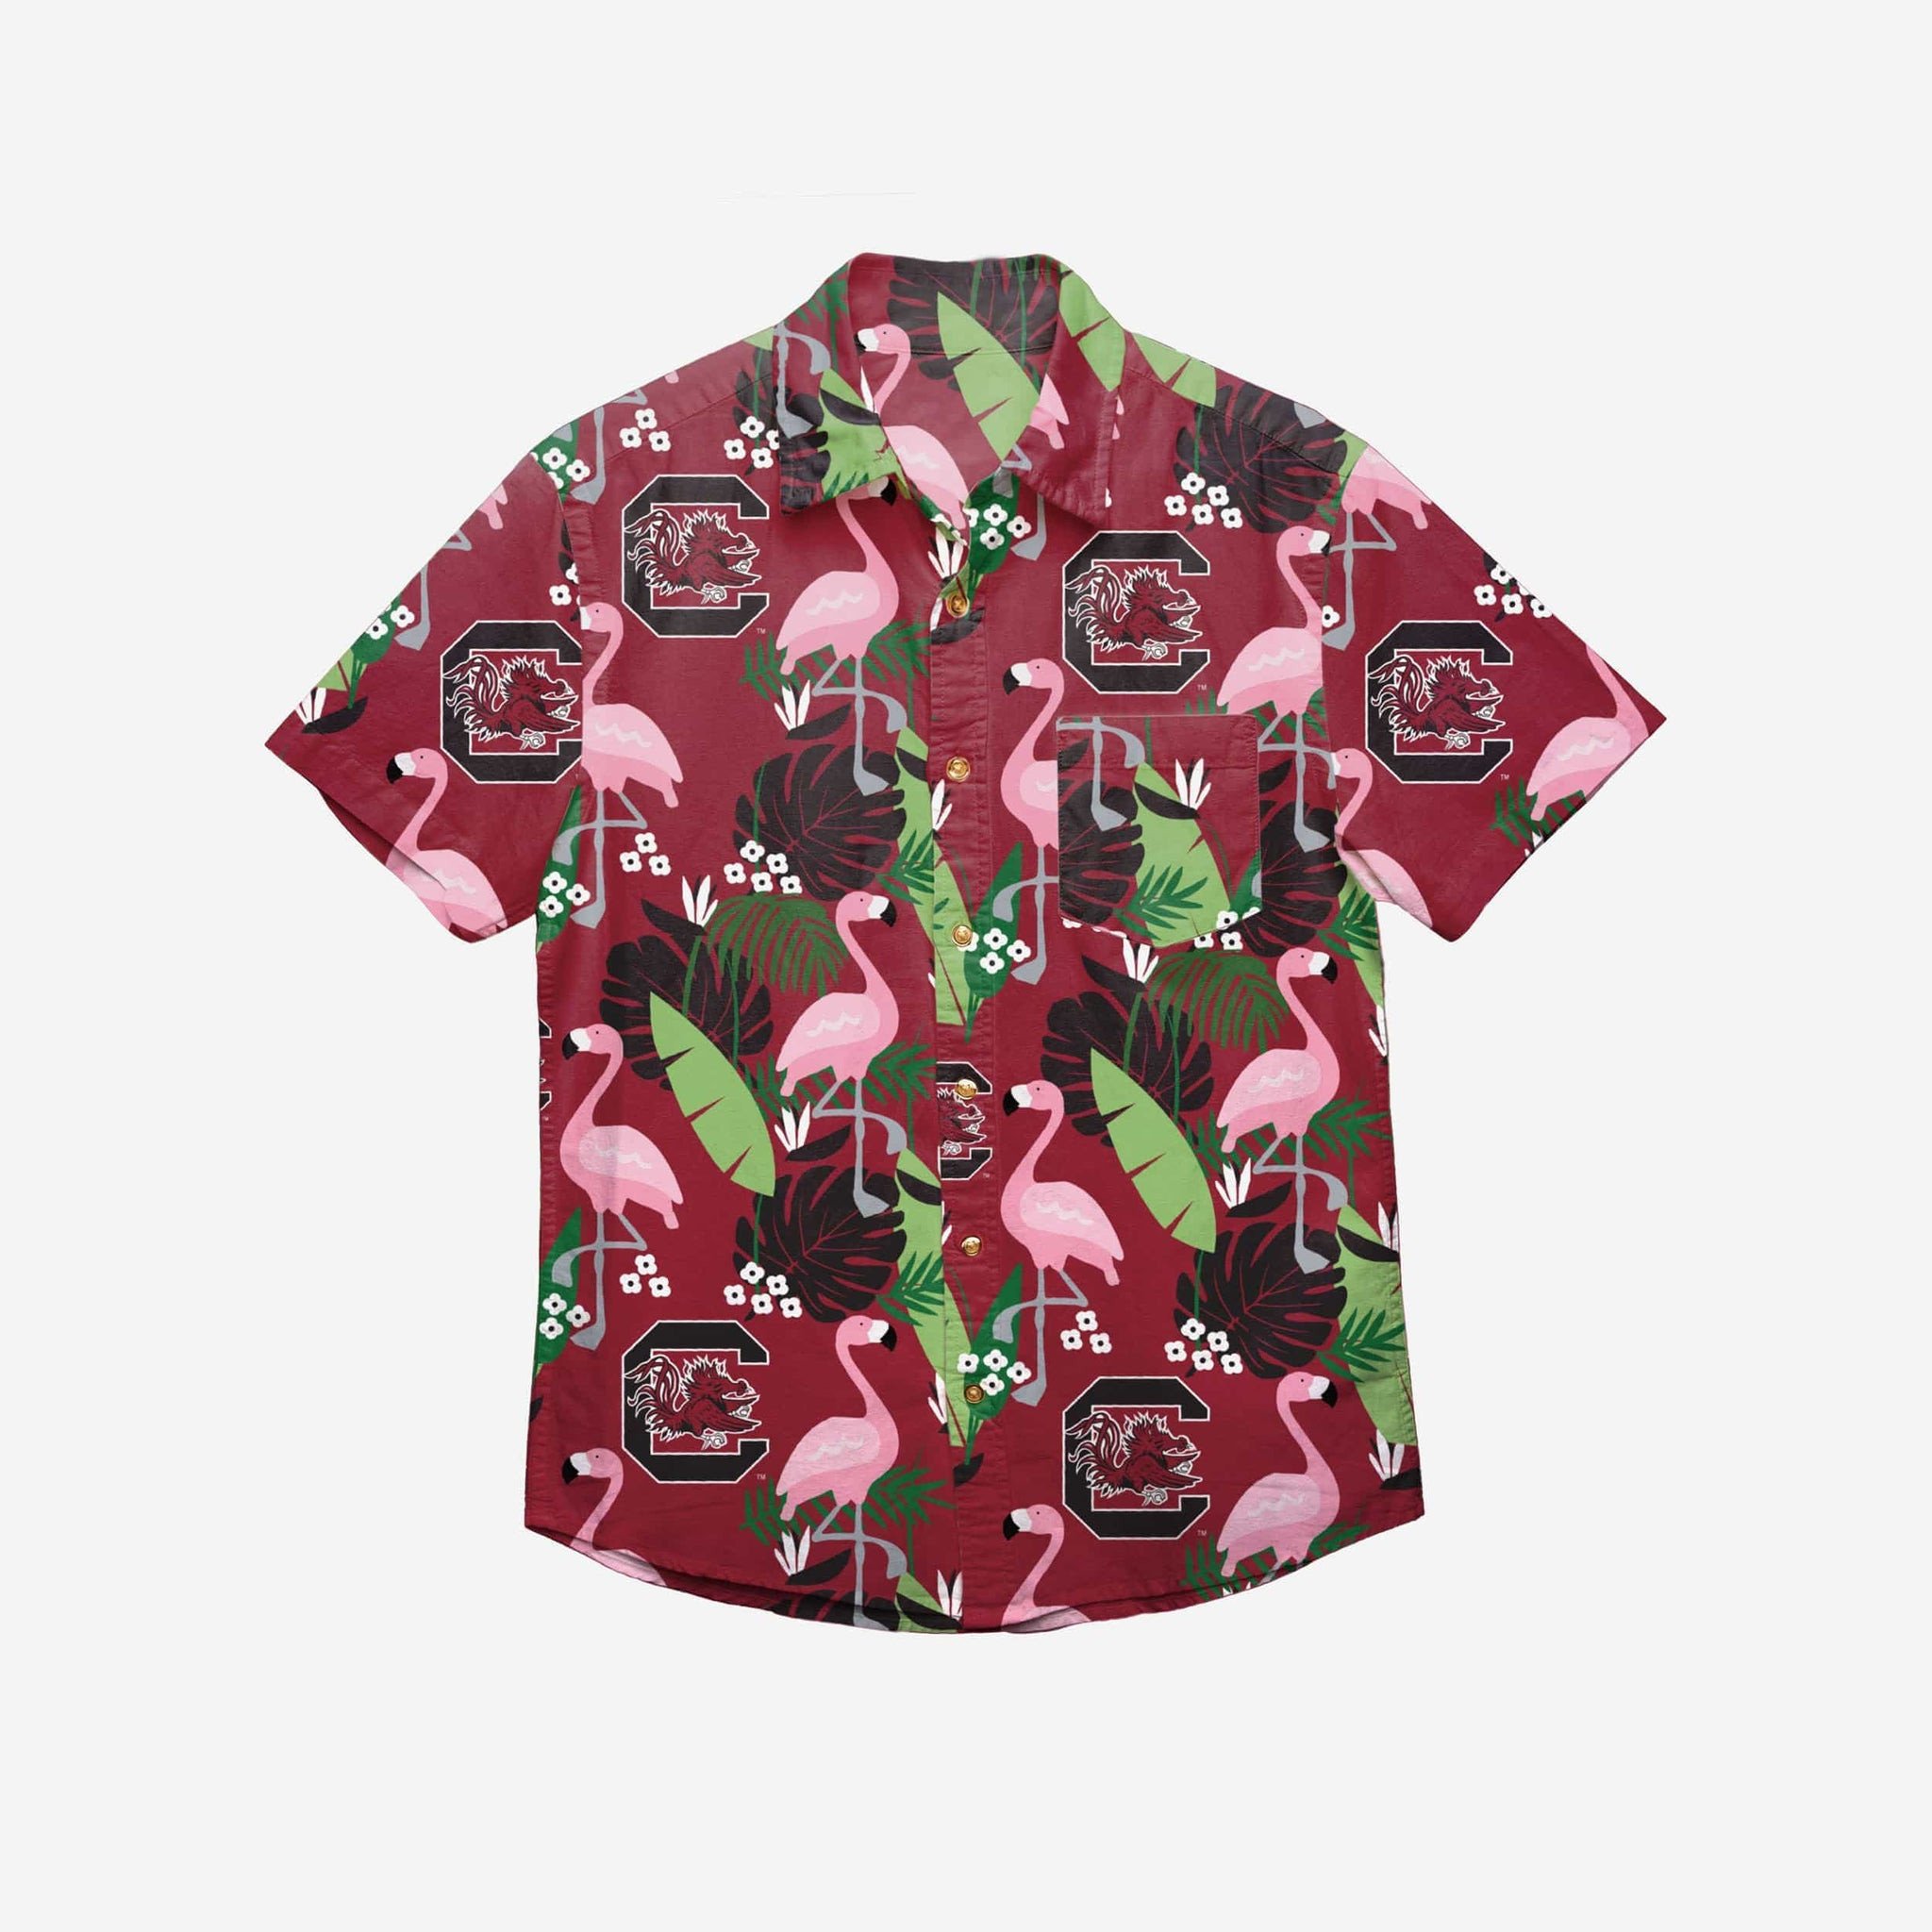 South Carolina Gamecocks Floral Button Up Hawaiian Shirt